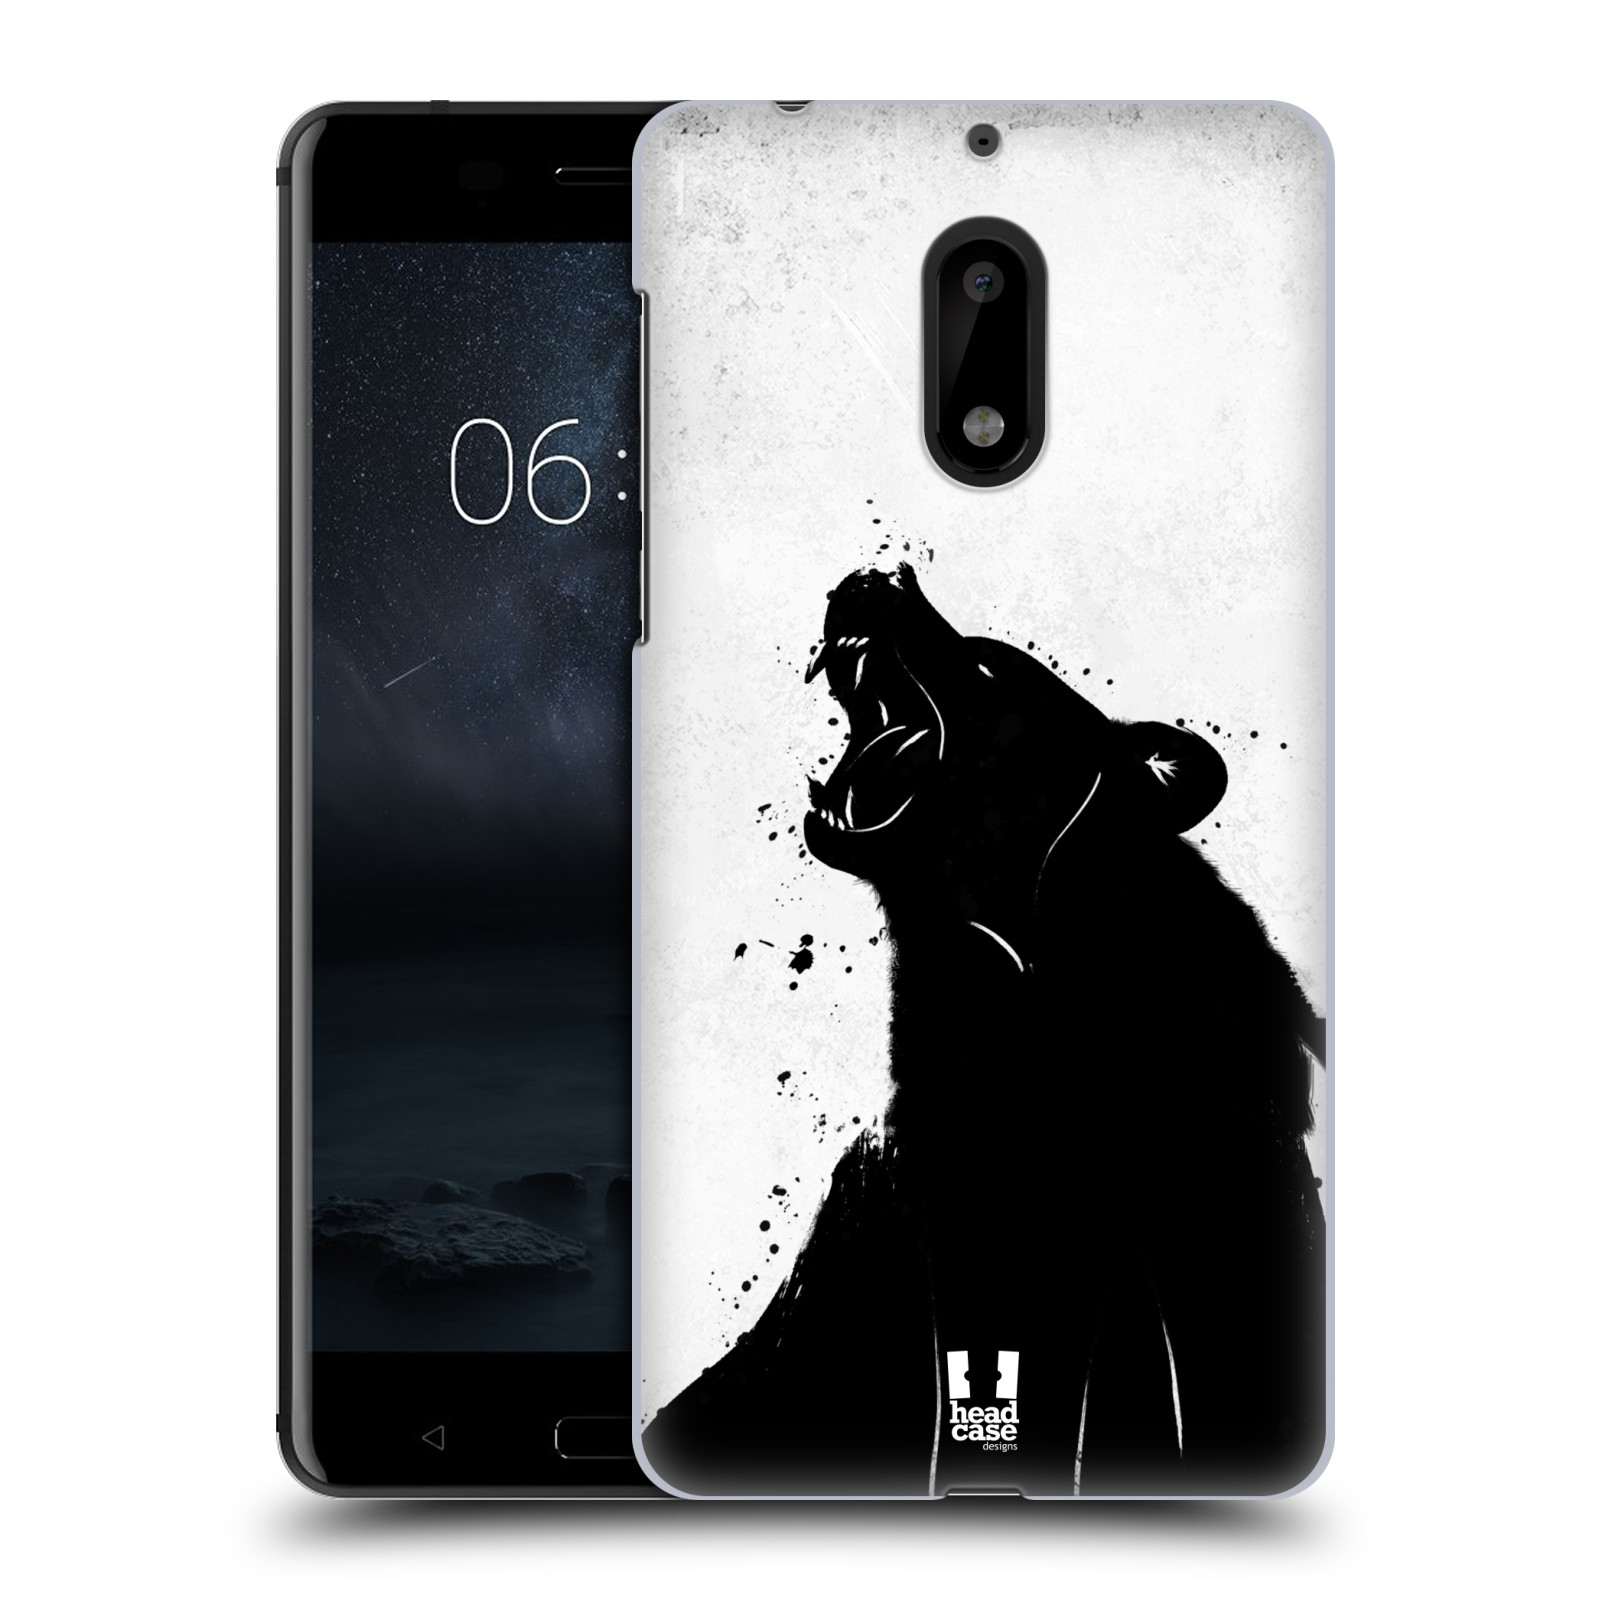 HEAD CASE plastový obal na mobil Nokia 6 vzor Kresba tuš zvíře medvěd